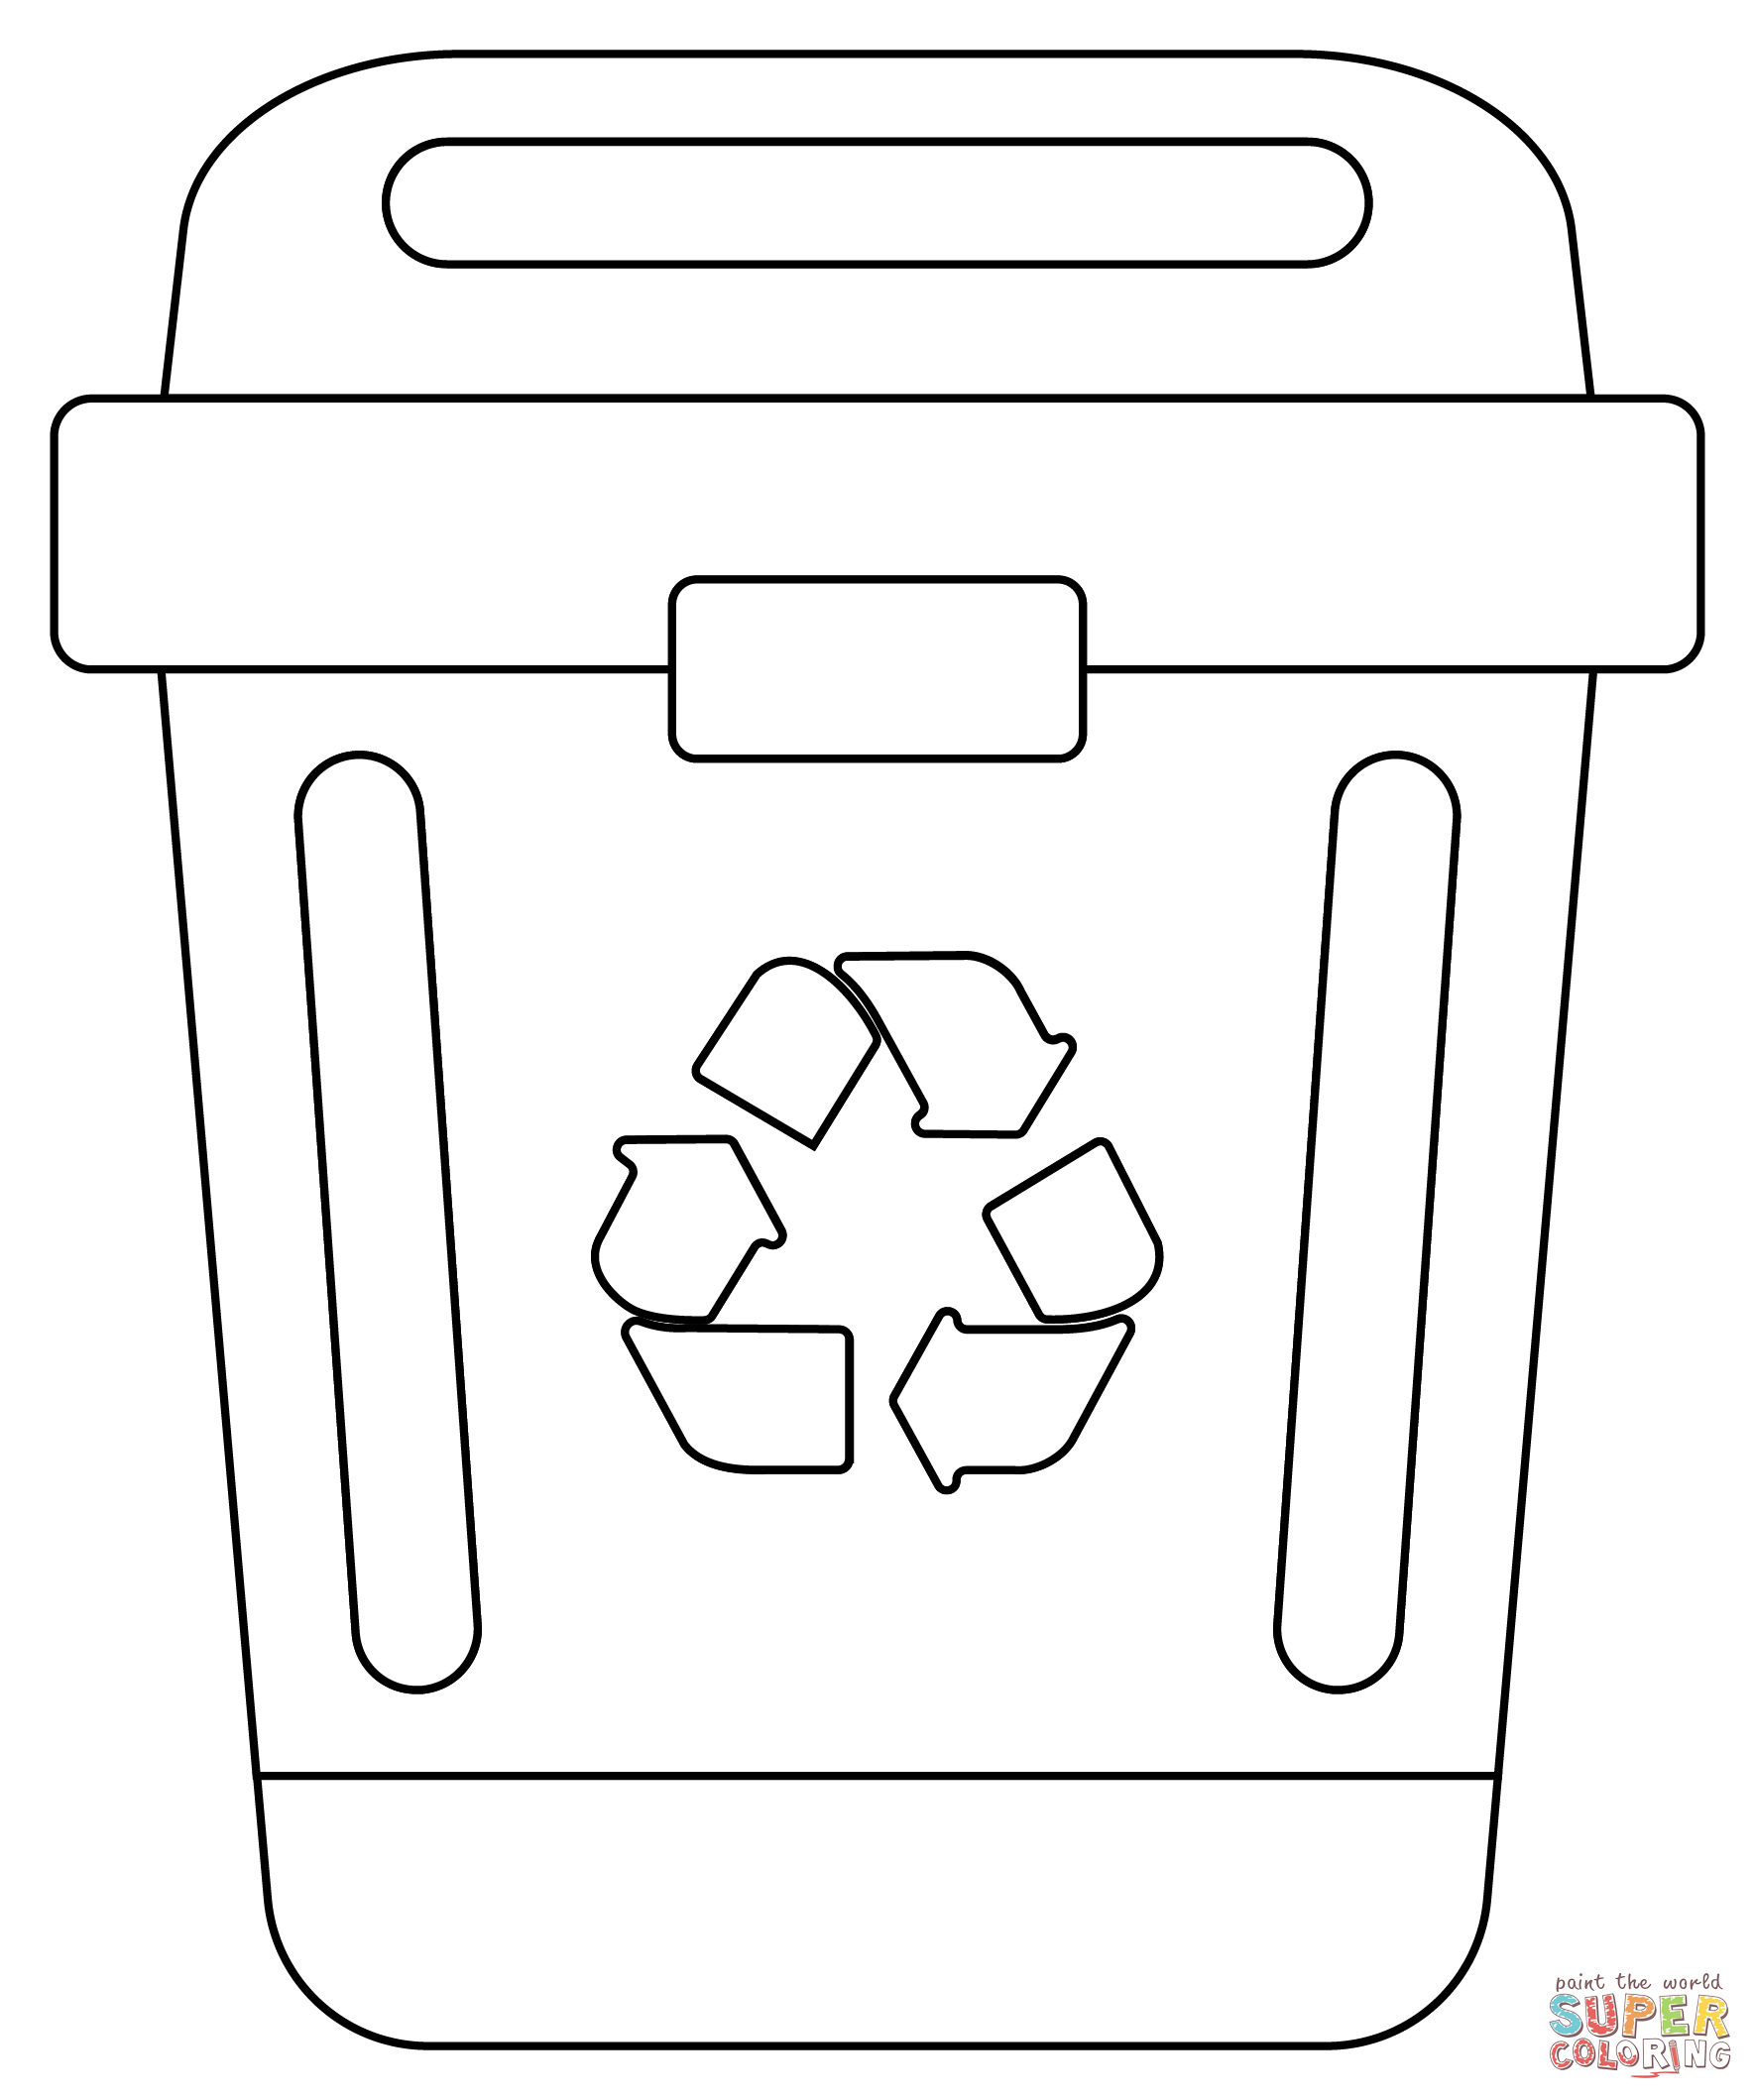 Dibujo de tacho de reciclaje para colorear dibujos para colorear imprimir gratis